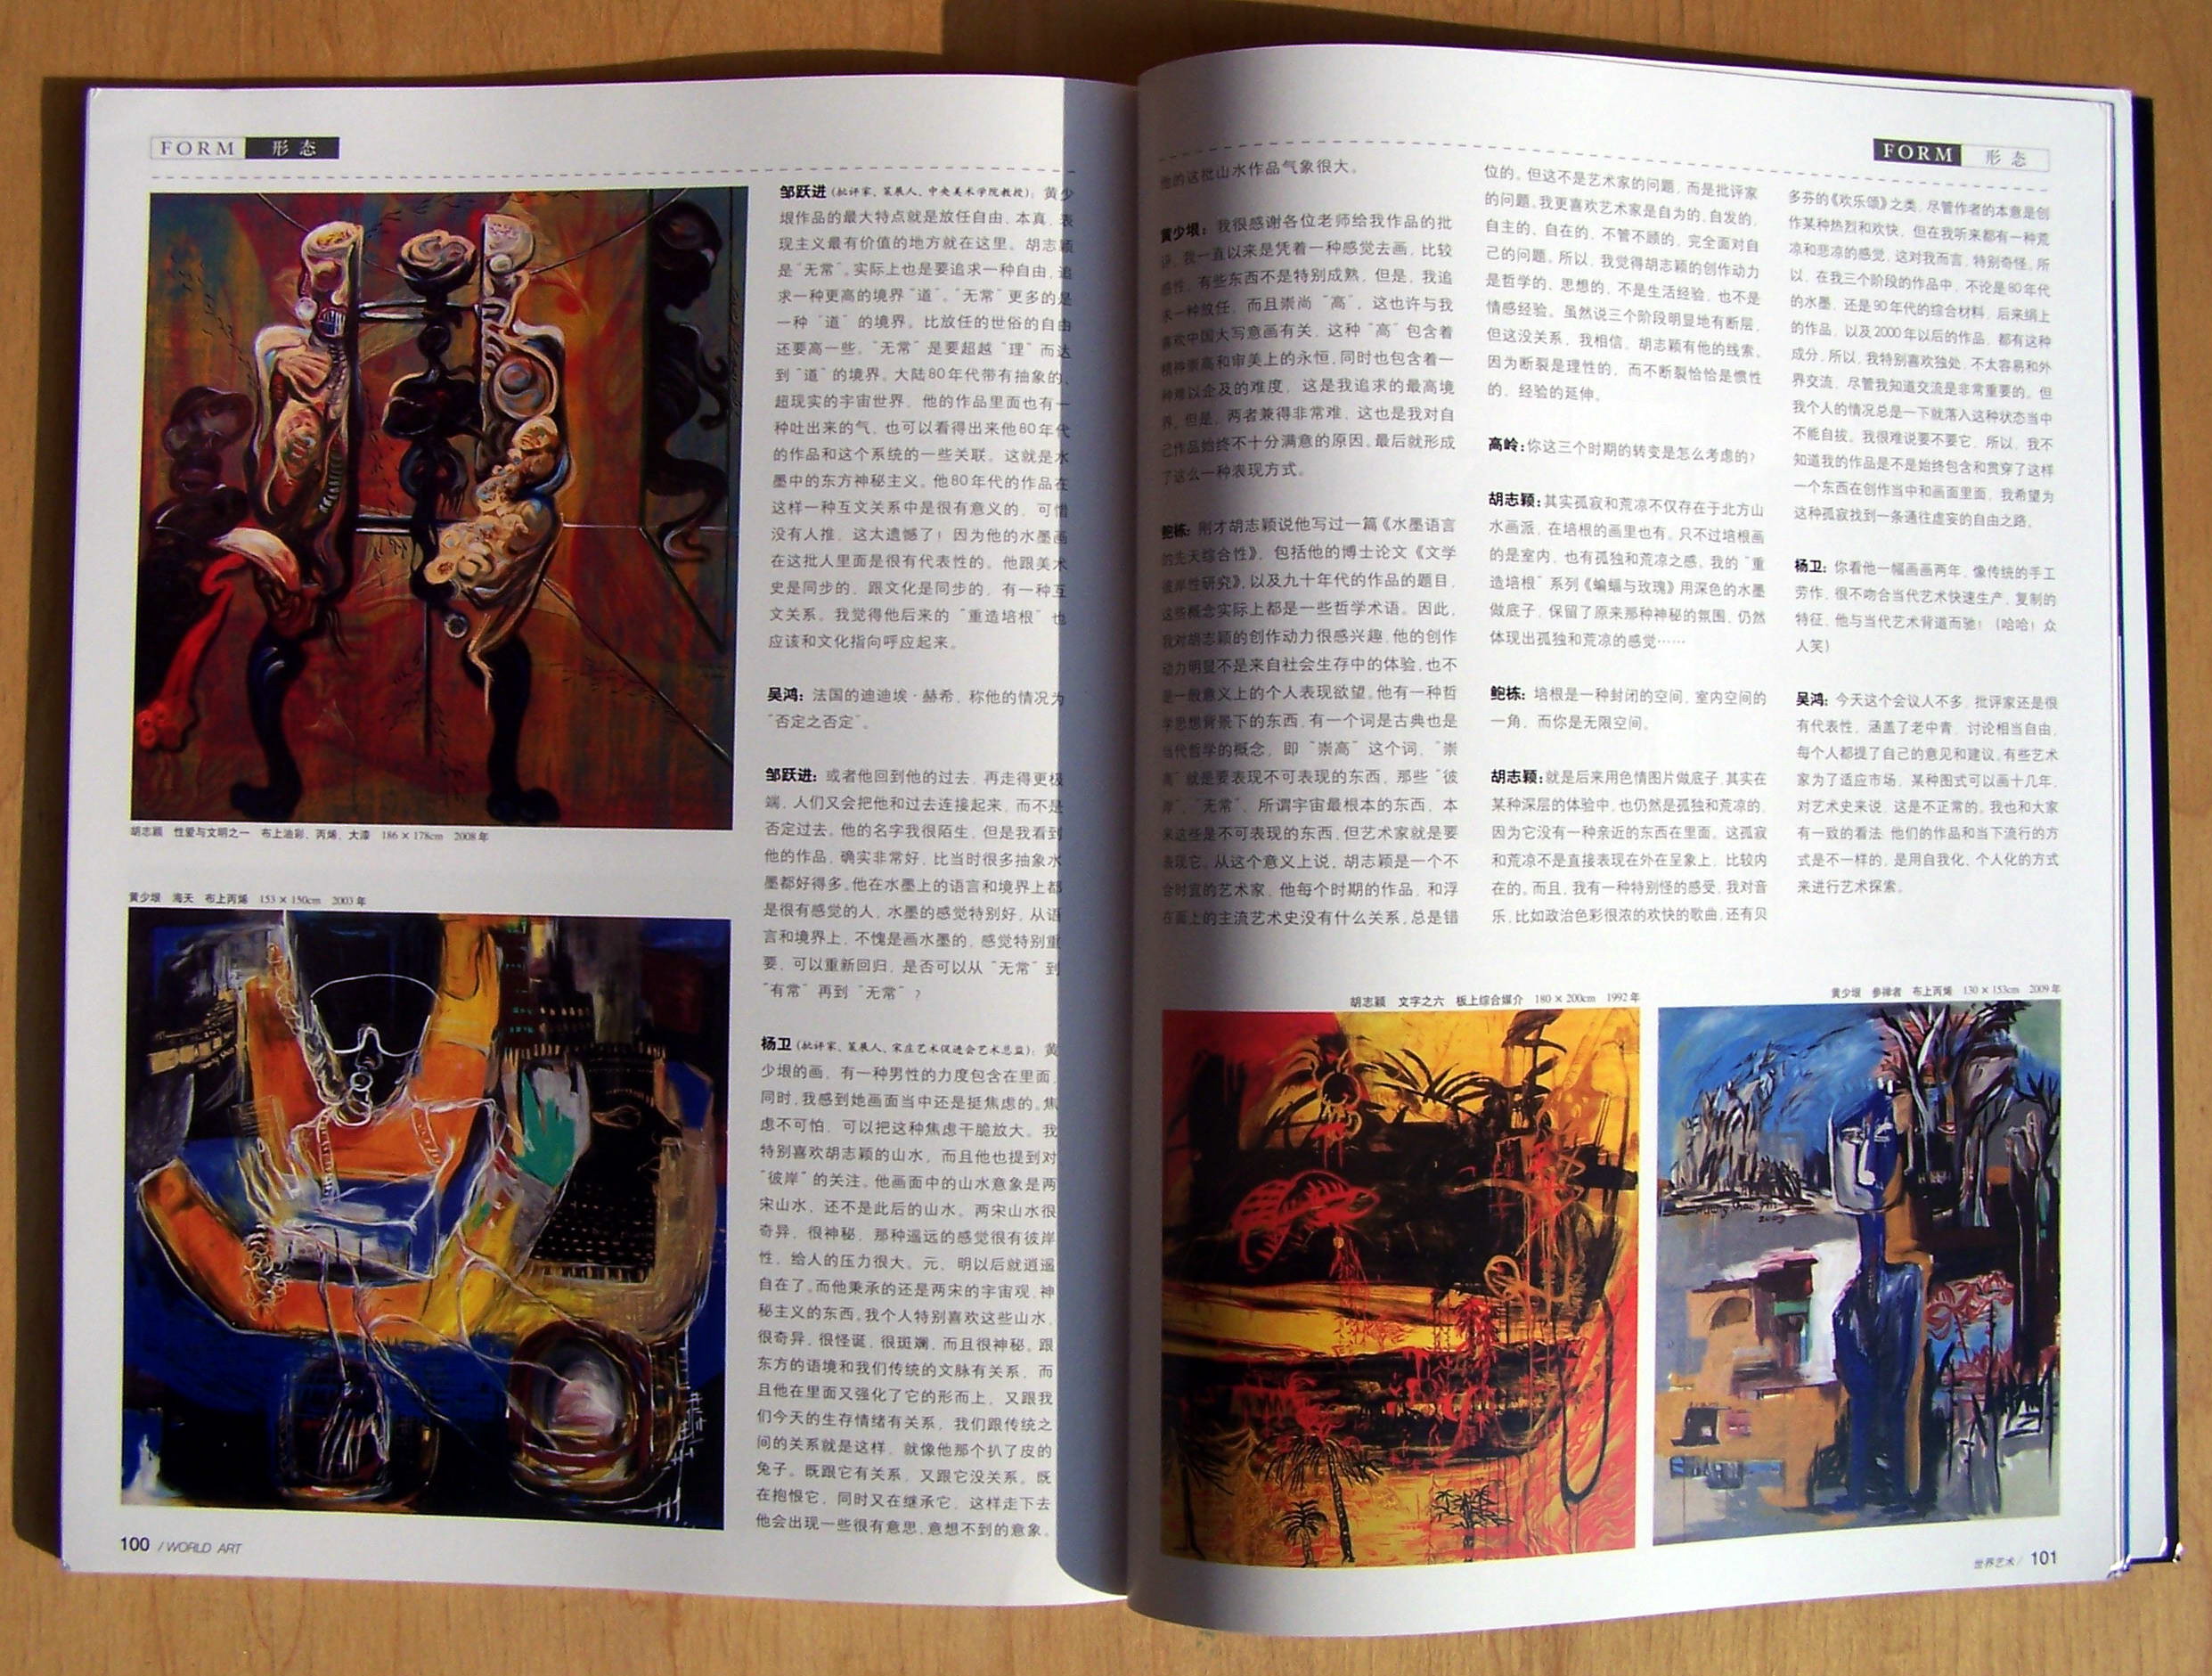 《世界藝術》，2009年第八期，介紹黃少垠作品